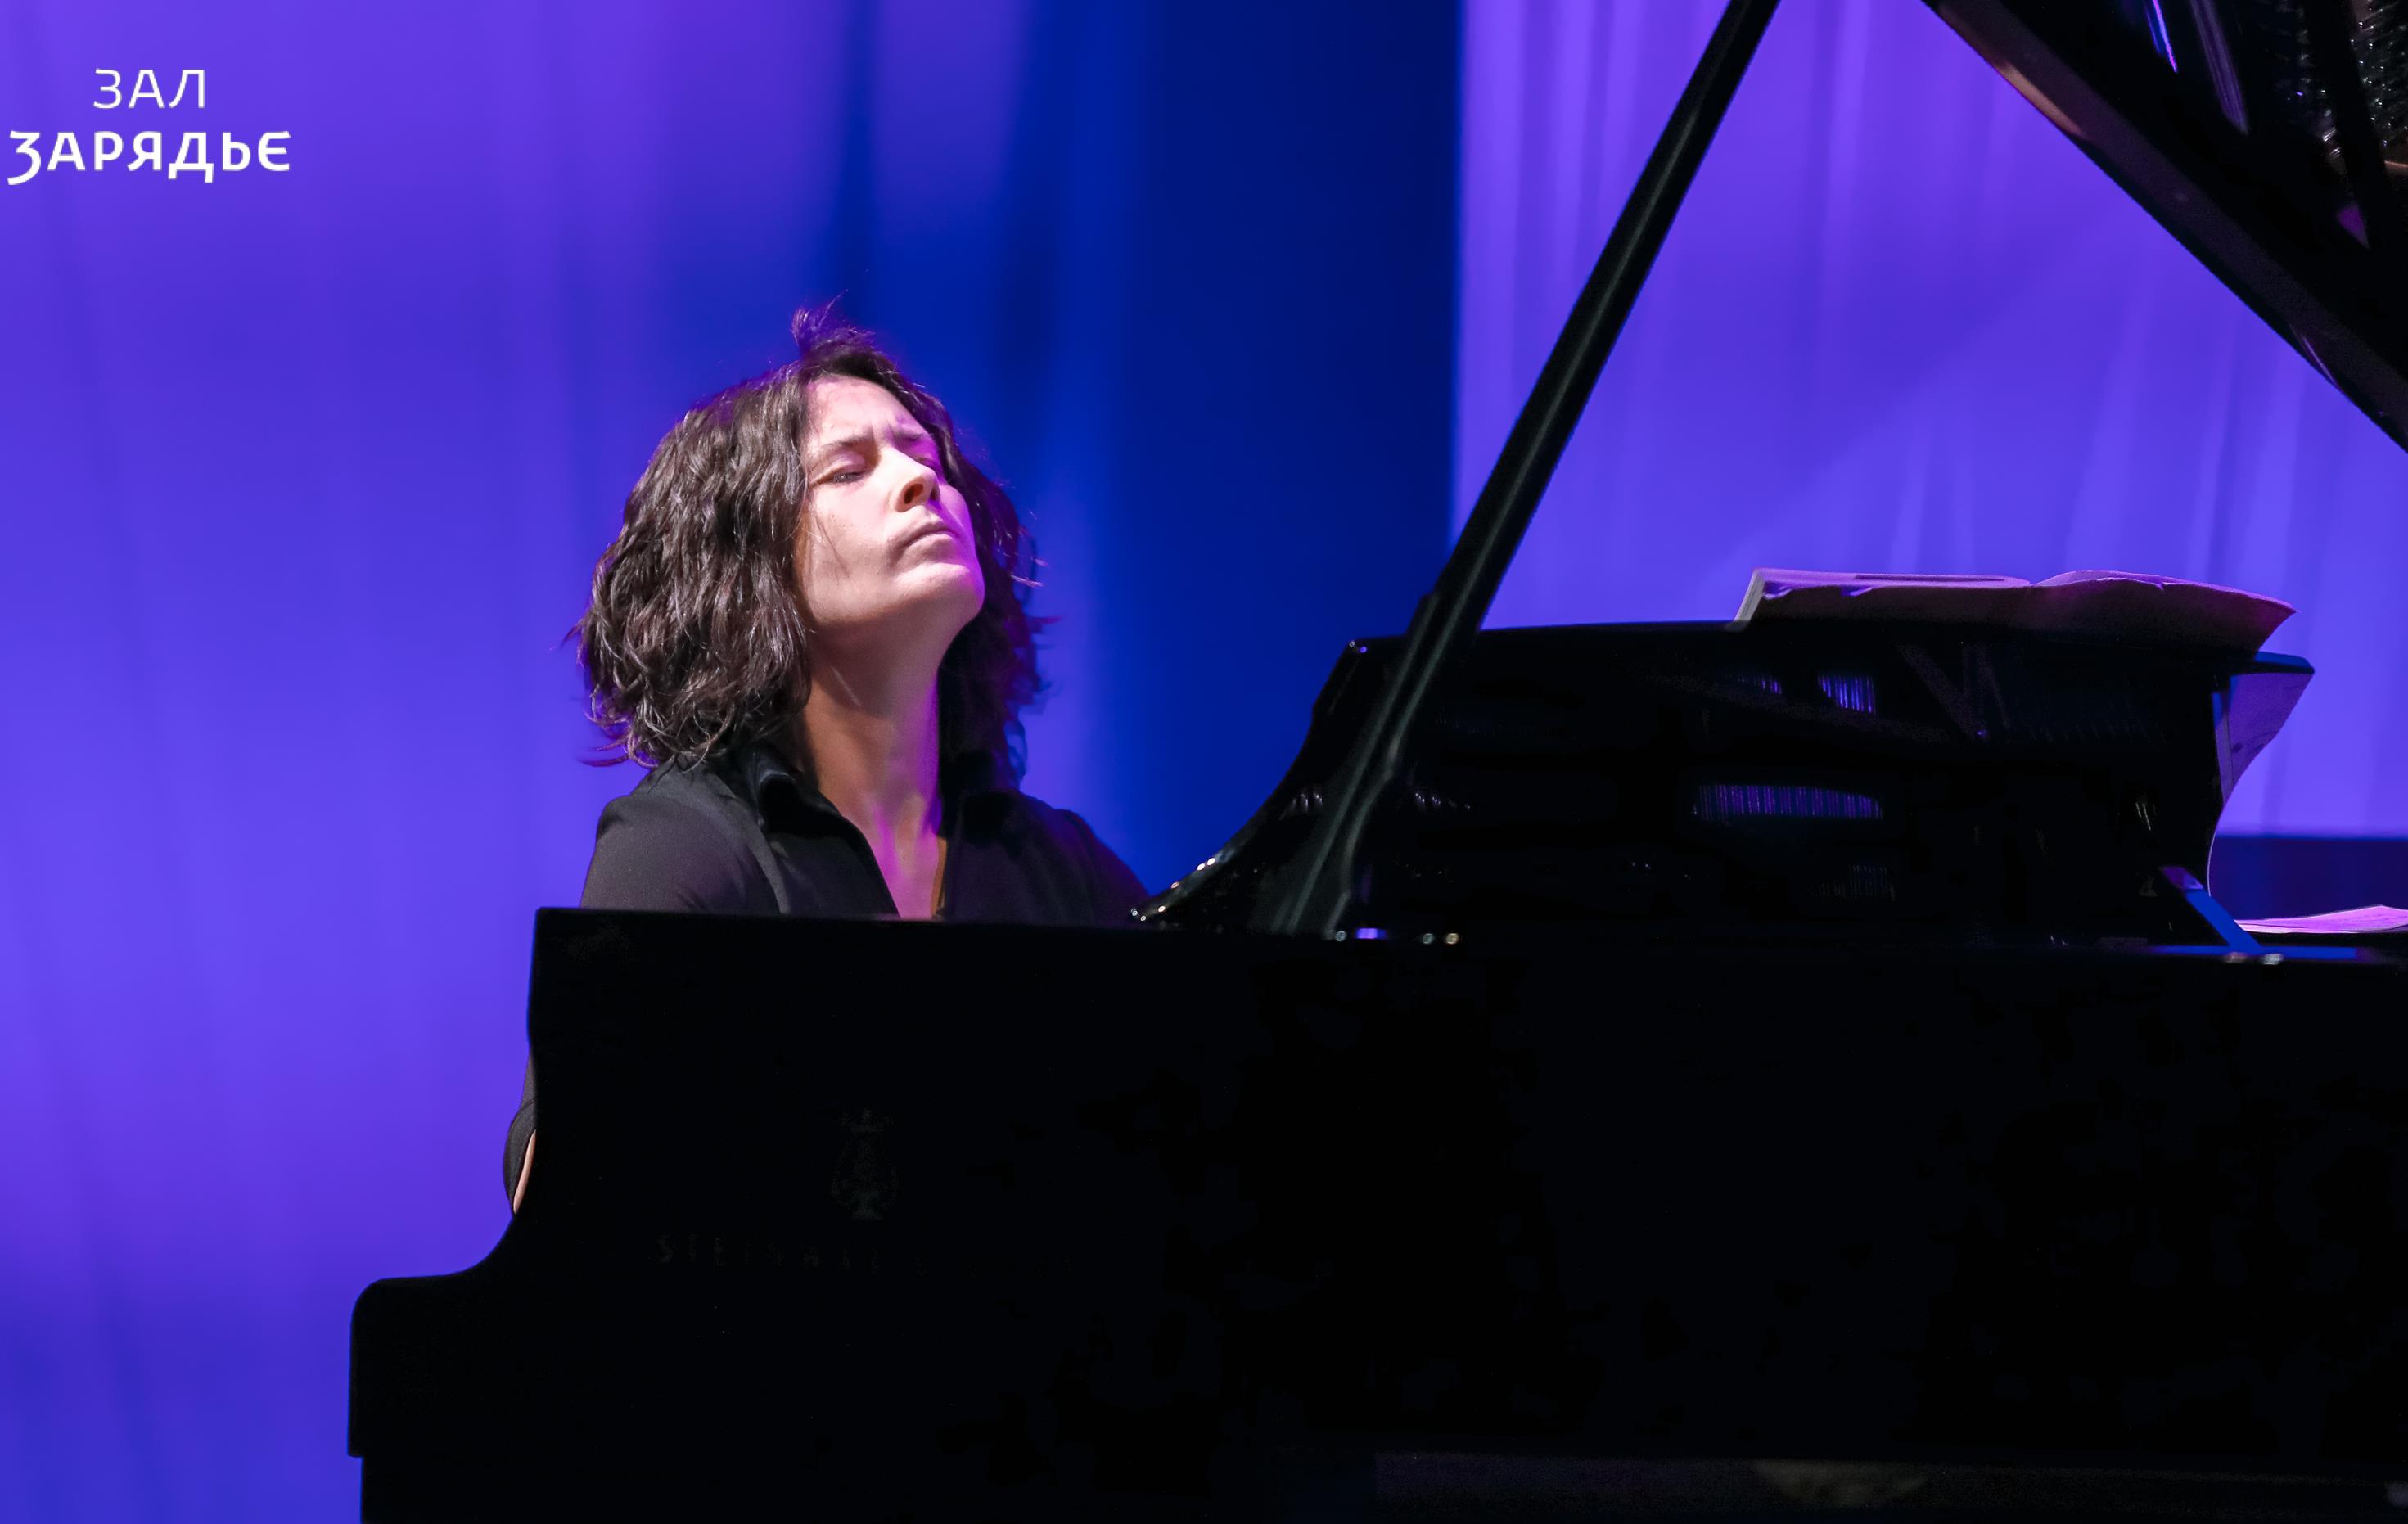 Concert of Varvara Myagkova